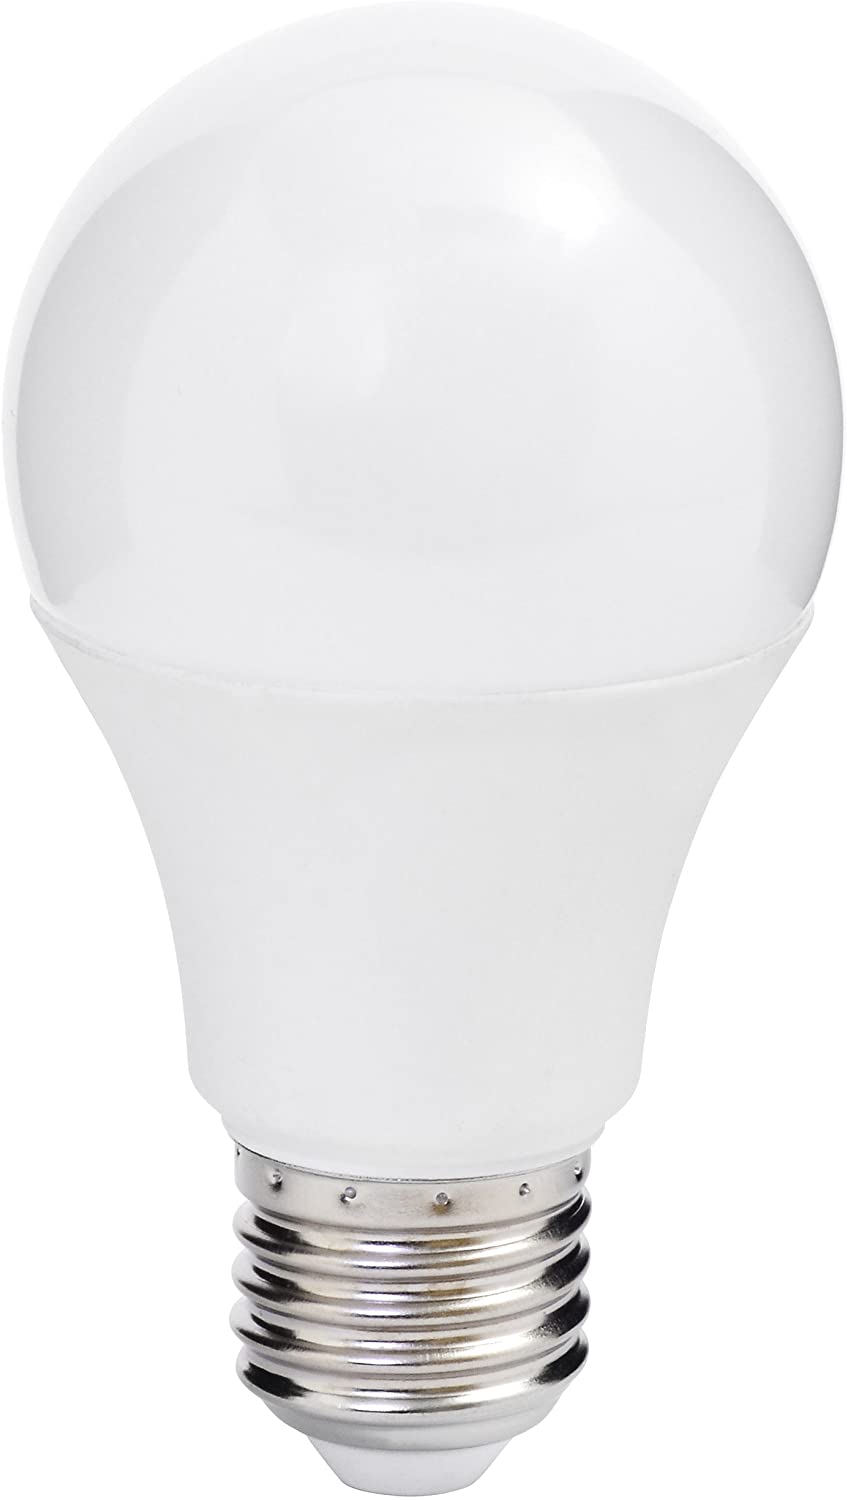 Müller Licht LED Leuchtmittel Birnenform 10W=57W E27 750lm SWITCH DIM (100%/55%/15%) 2700K (Warmweiß)